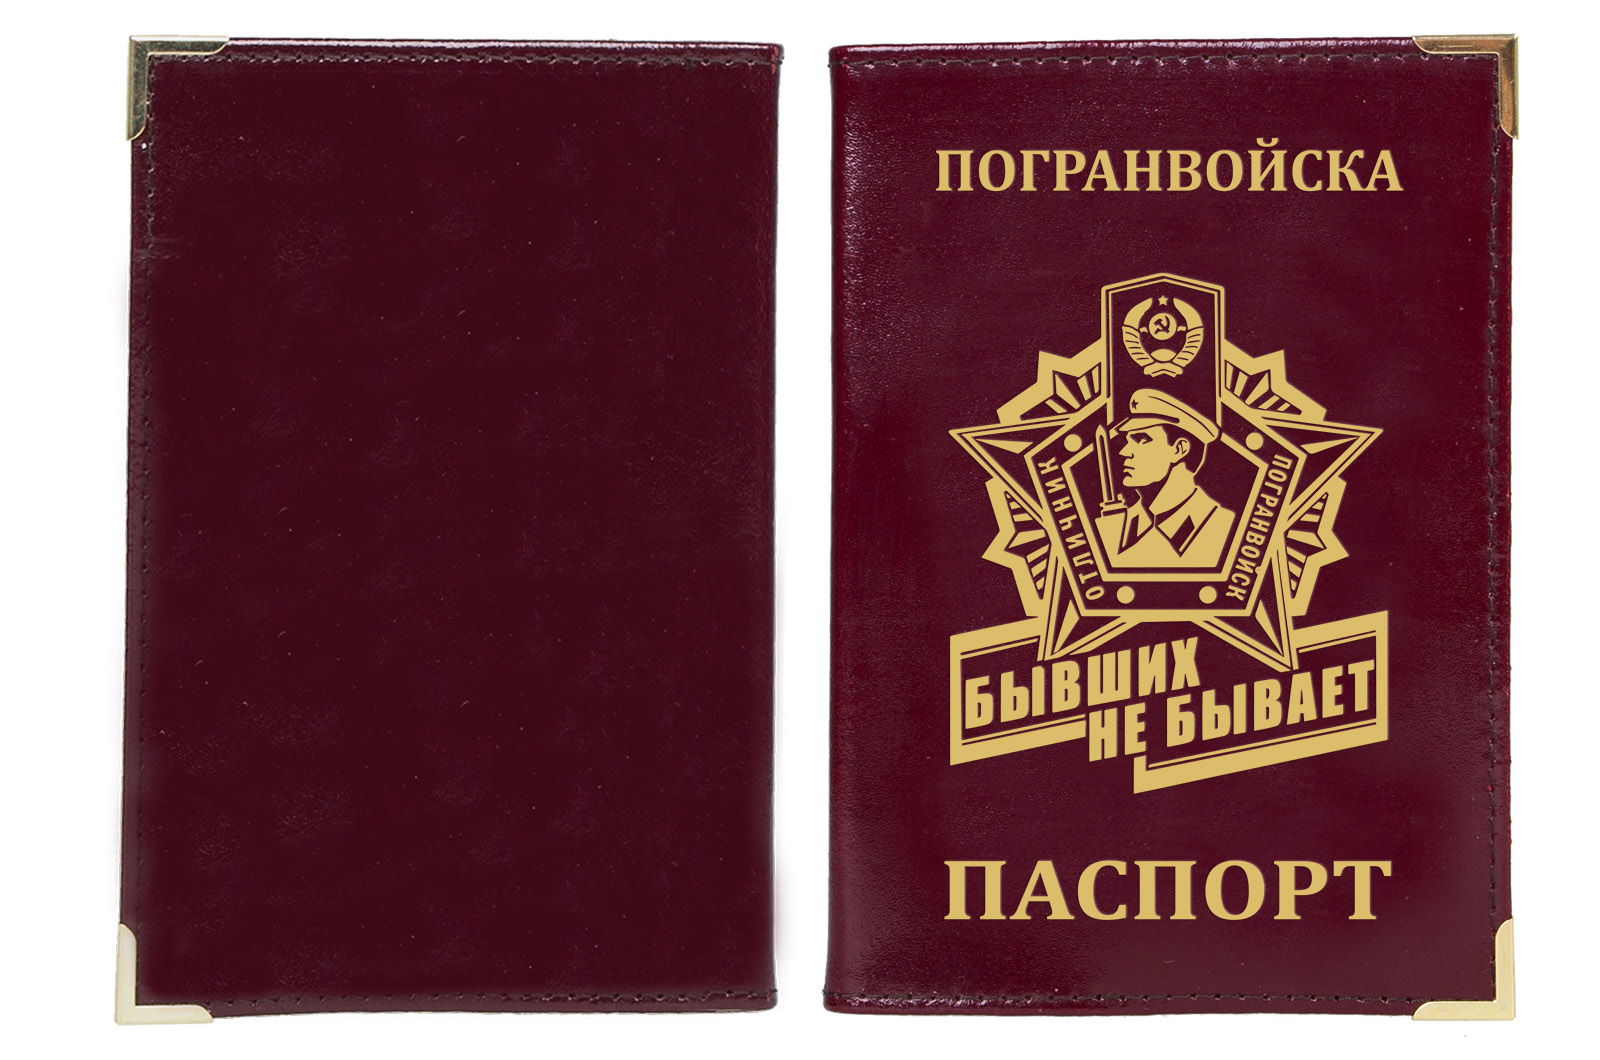 Купить обложку на паспорт "Погранвойска"